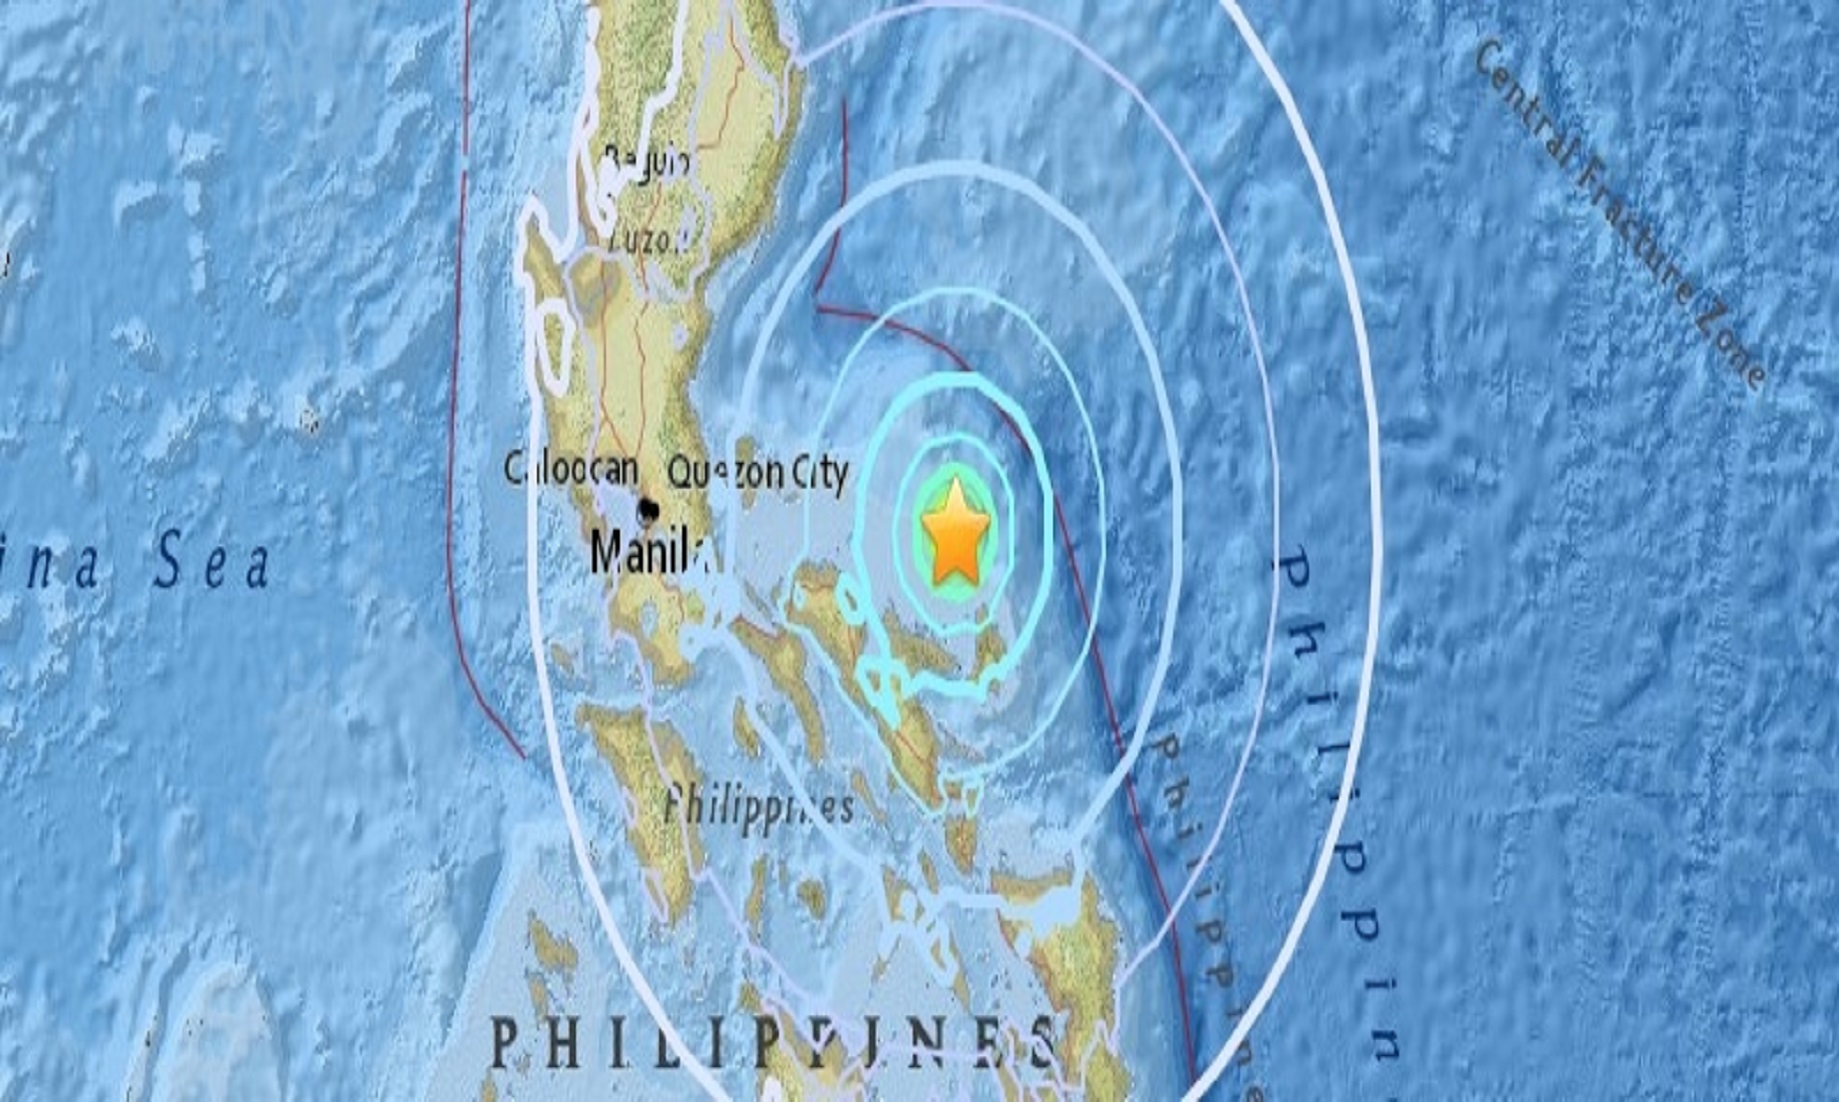 5.3-Magnitude Quake Hits Luzon, Philippines: USGS